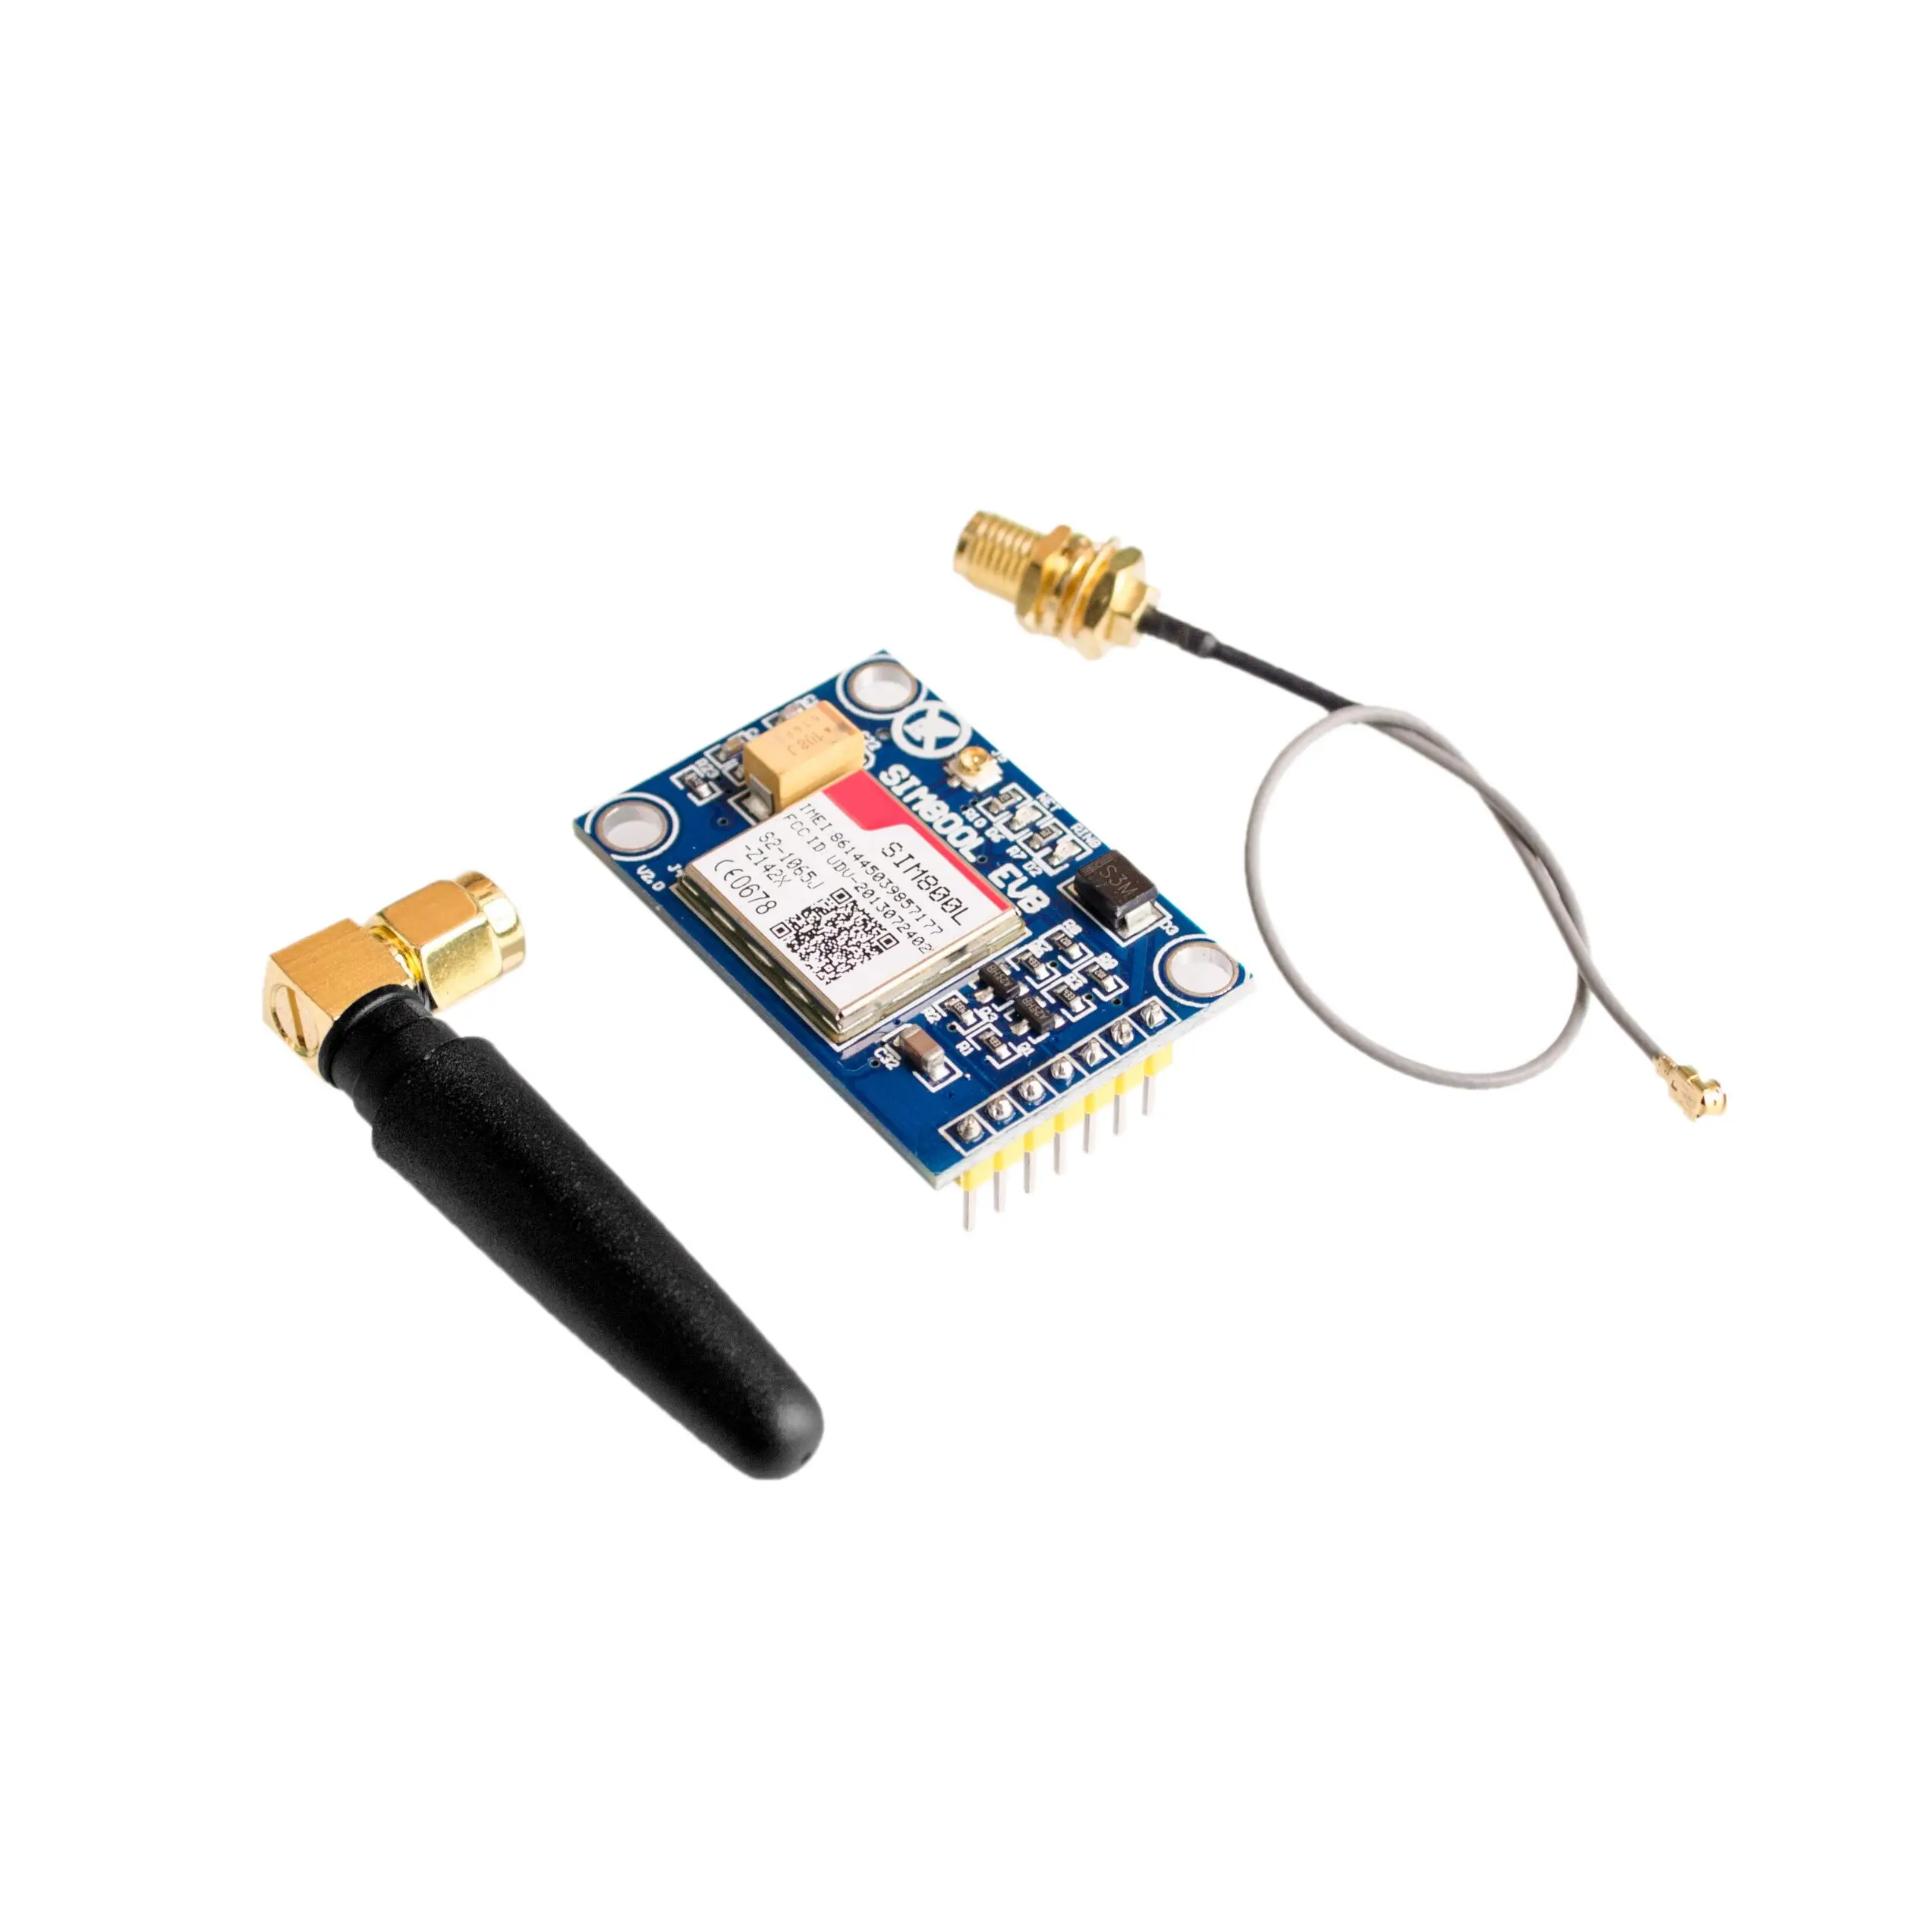 SIM800L V2.0 5V беспроводной GSM GPRS модуль четырехдиапазонный с антенной кабельный колпачок для Arduino